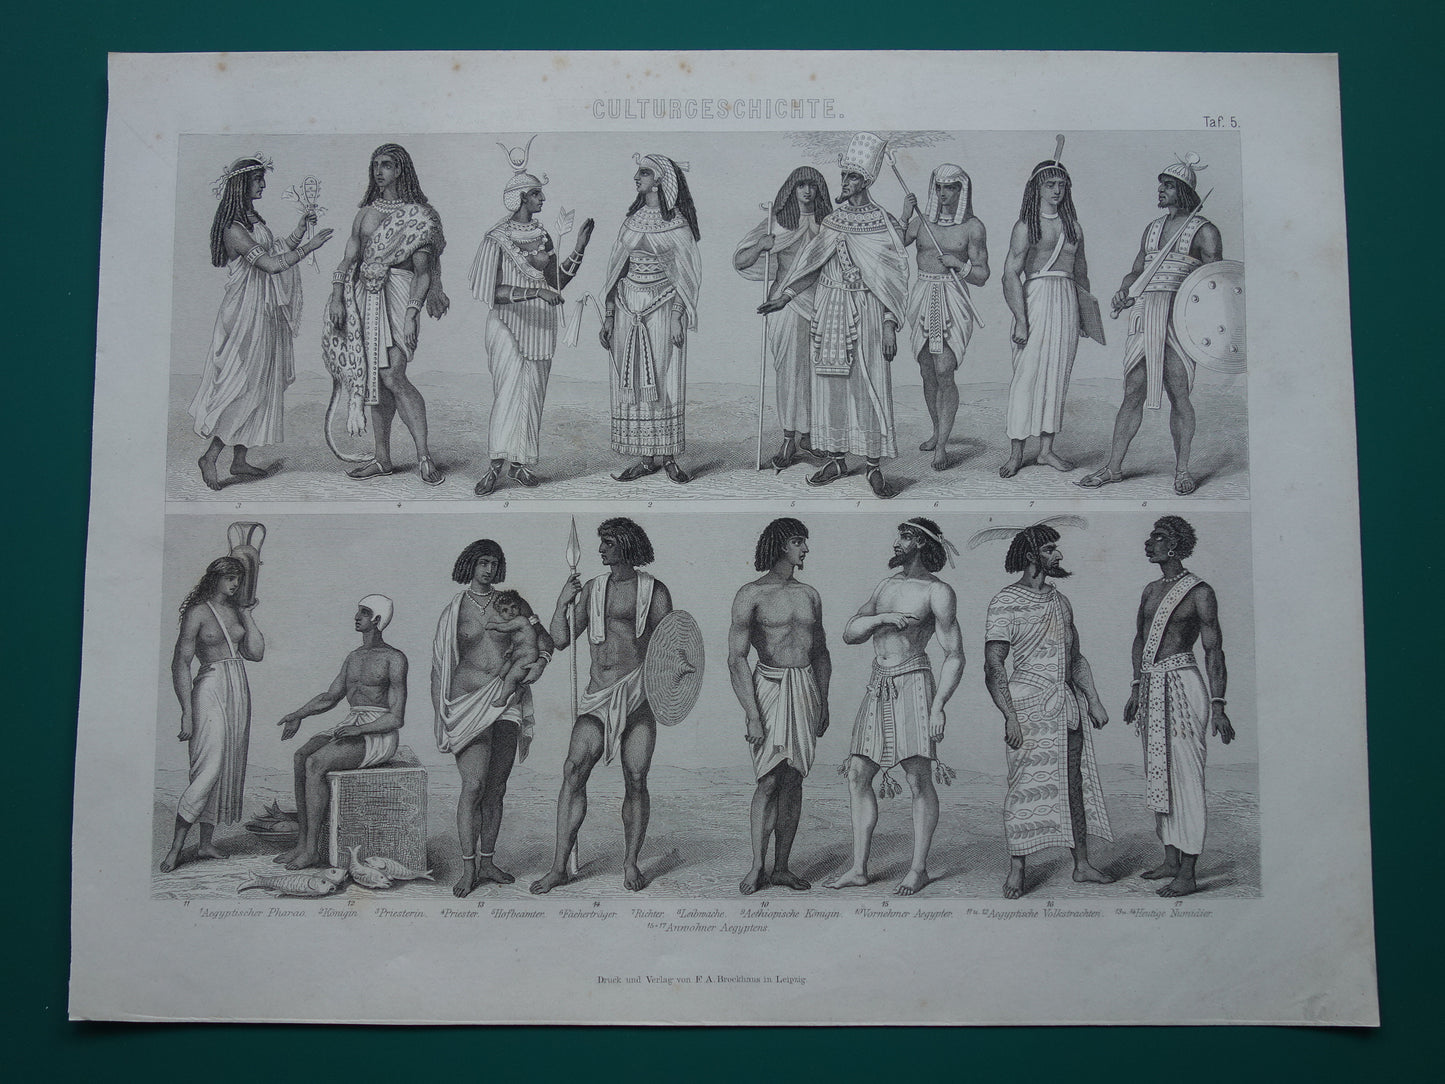 150+ jaar oude prent kleding Egyptische beschaving - antieke illustratie Egypte in de oudheid - Egyptologie geschiedenis prints